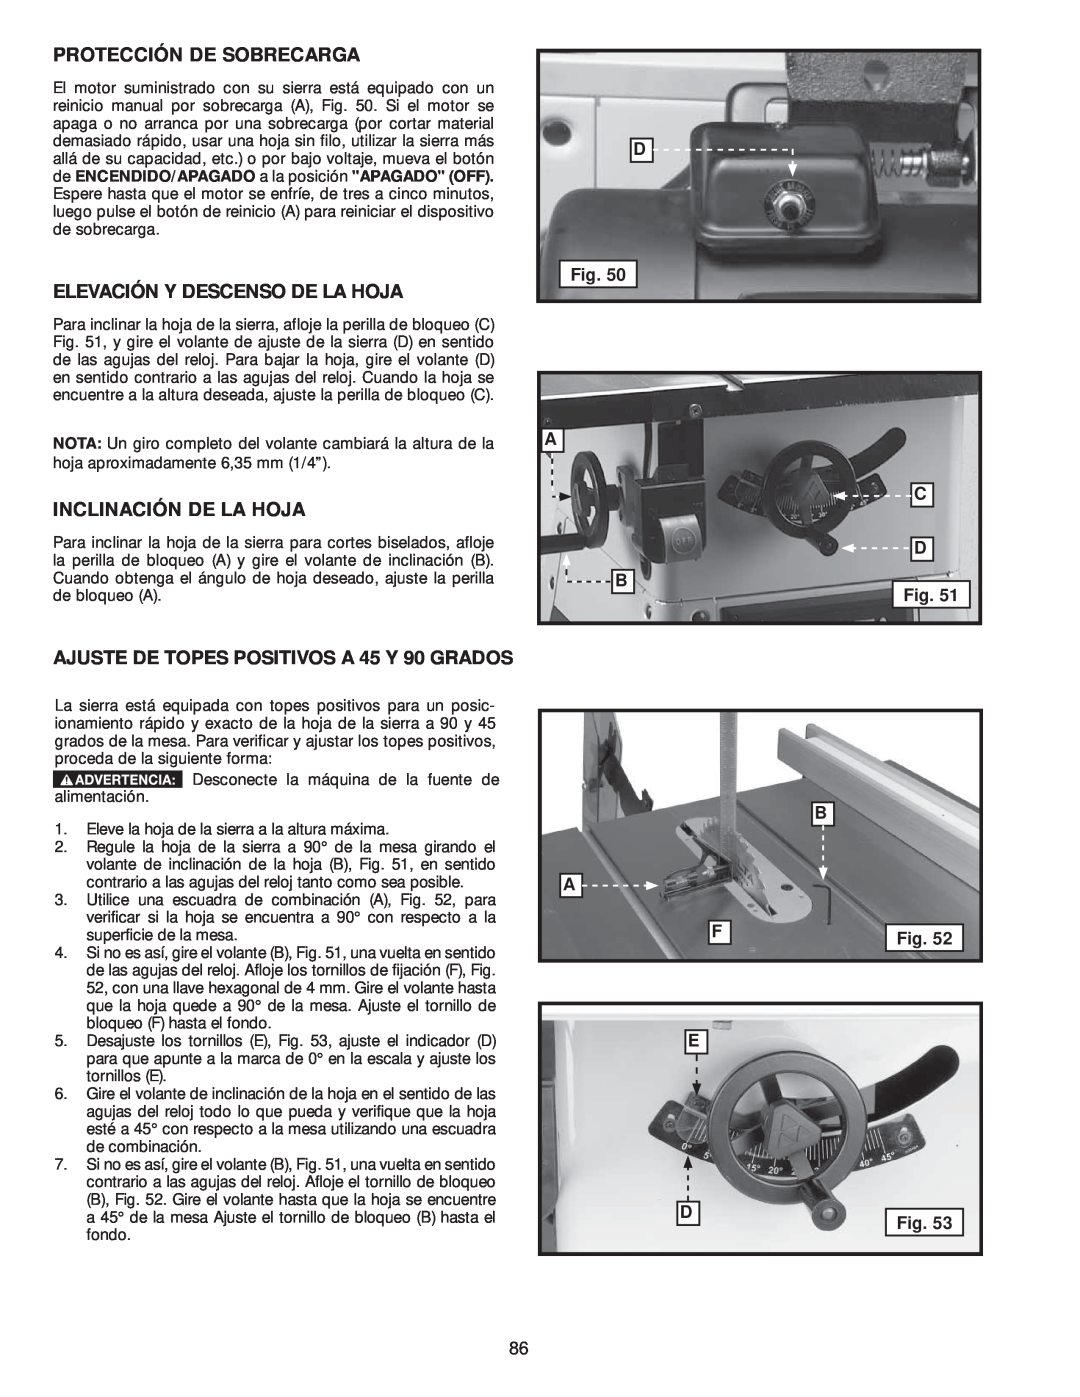 Delta 36-979, 36-978 instruction manual Protección De Sobrecarga, Elevación Y Descenso De La Hoja, Inclinación De La Hoja 